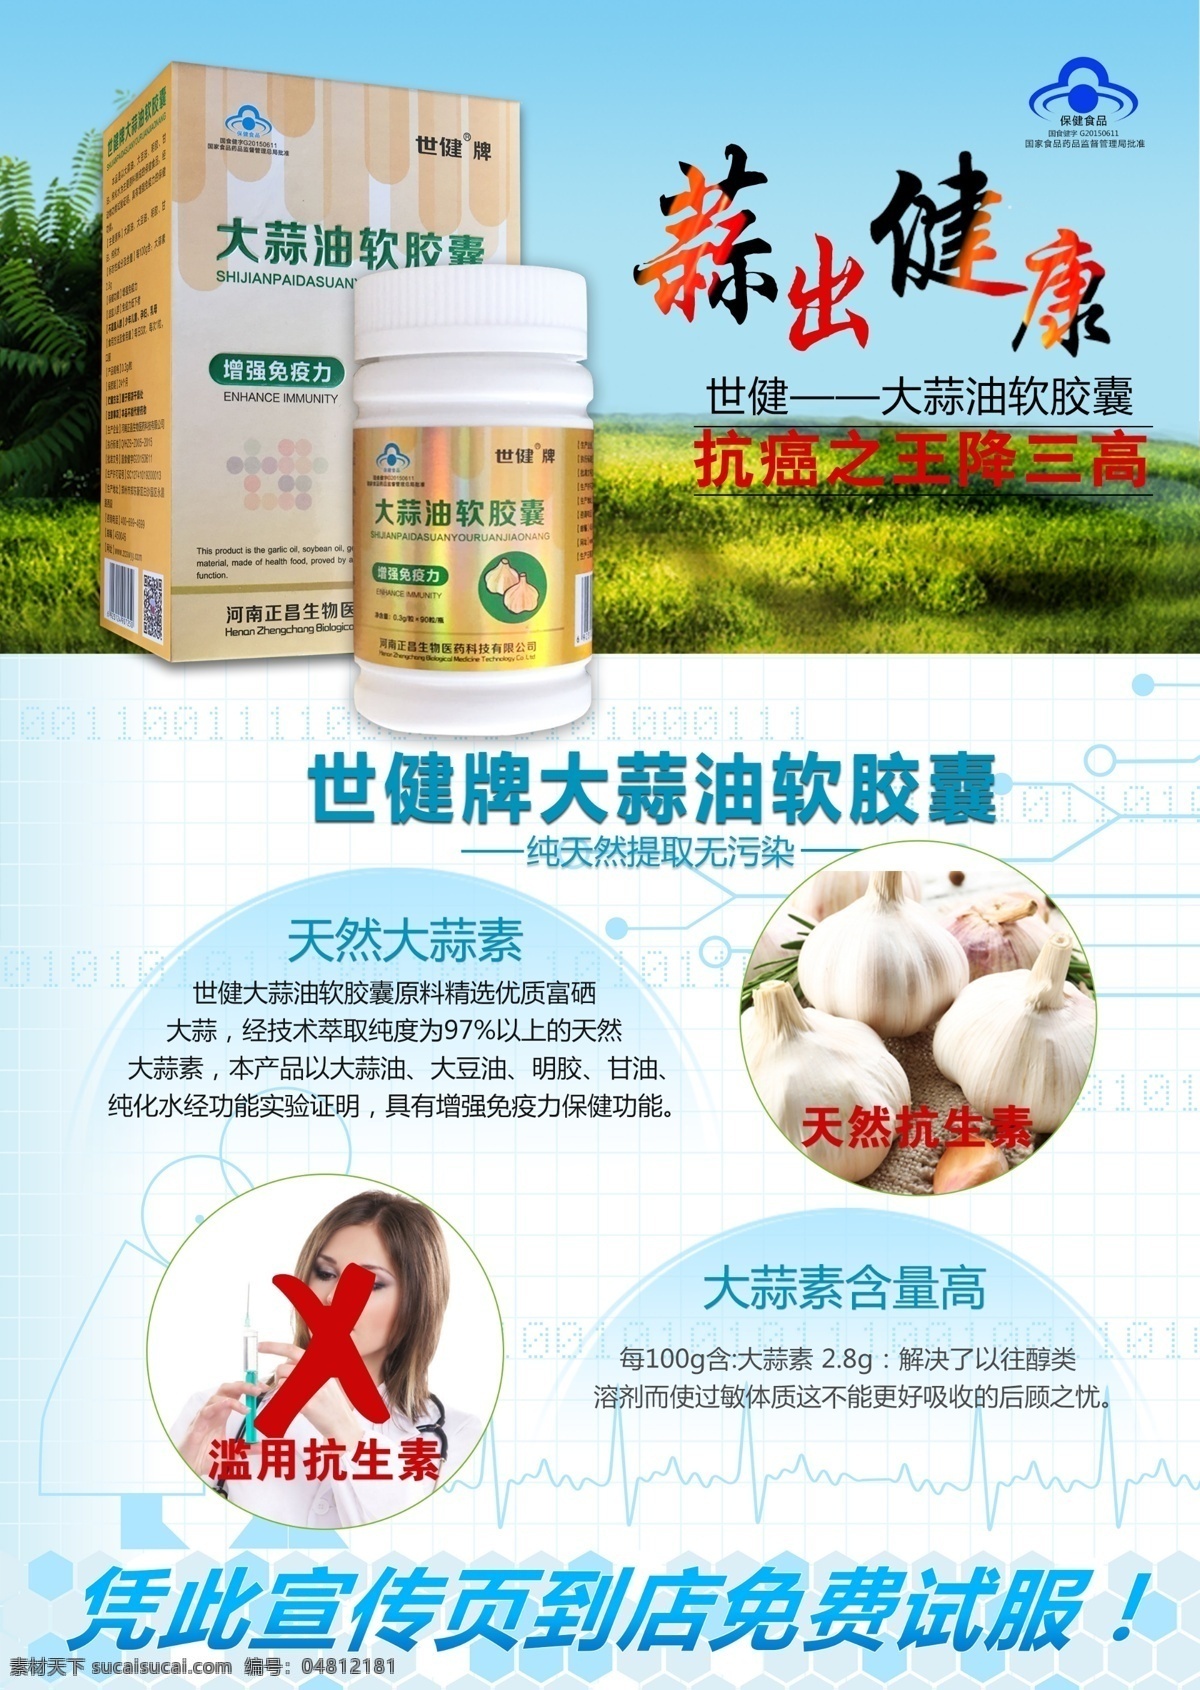 大蒜 油 软胶囊 海报 产品宣传册 宣传页 产品广告 产品详情